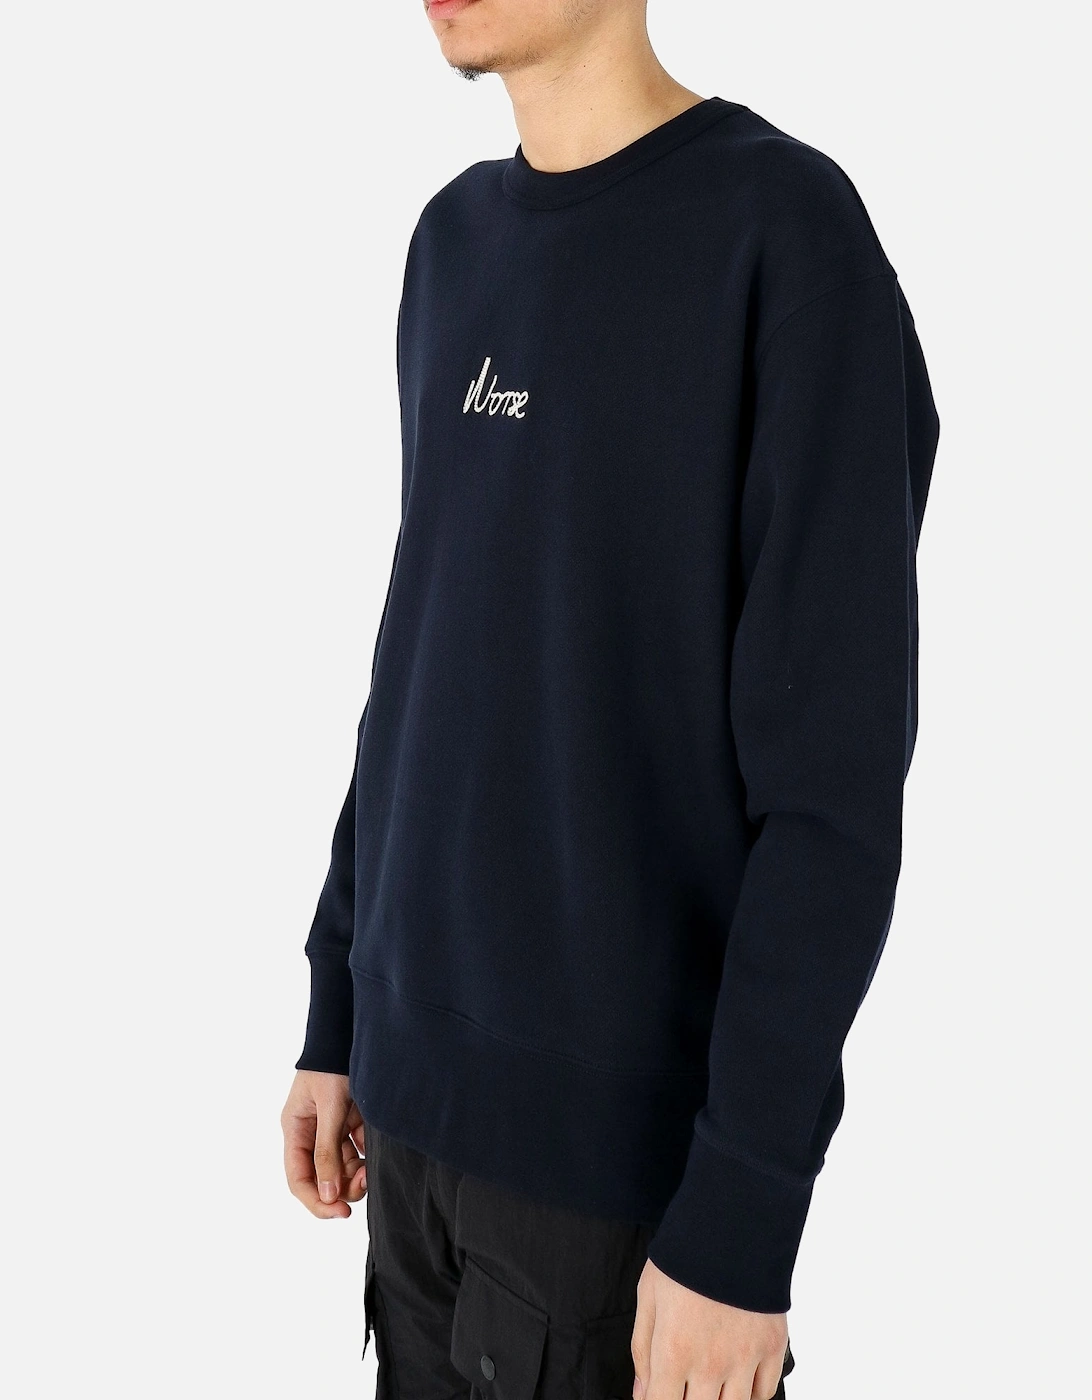 Arne Relaxed Chain Stitch Navy Sweatshirt